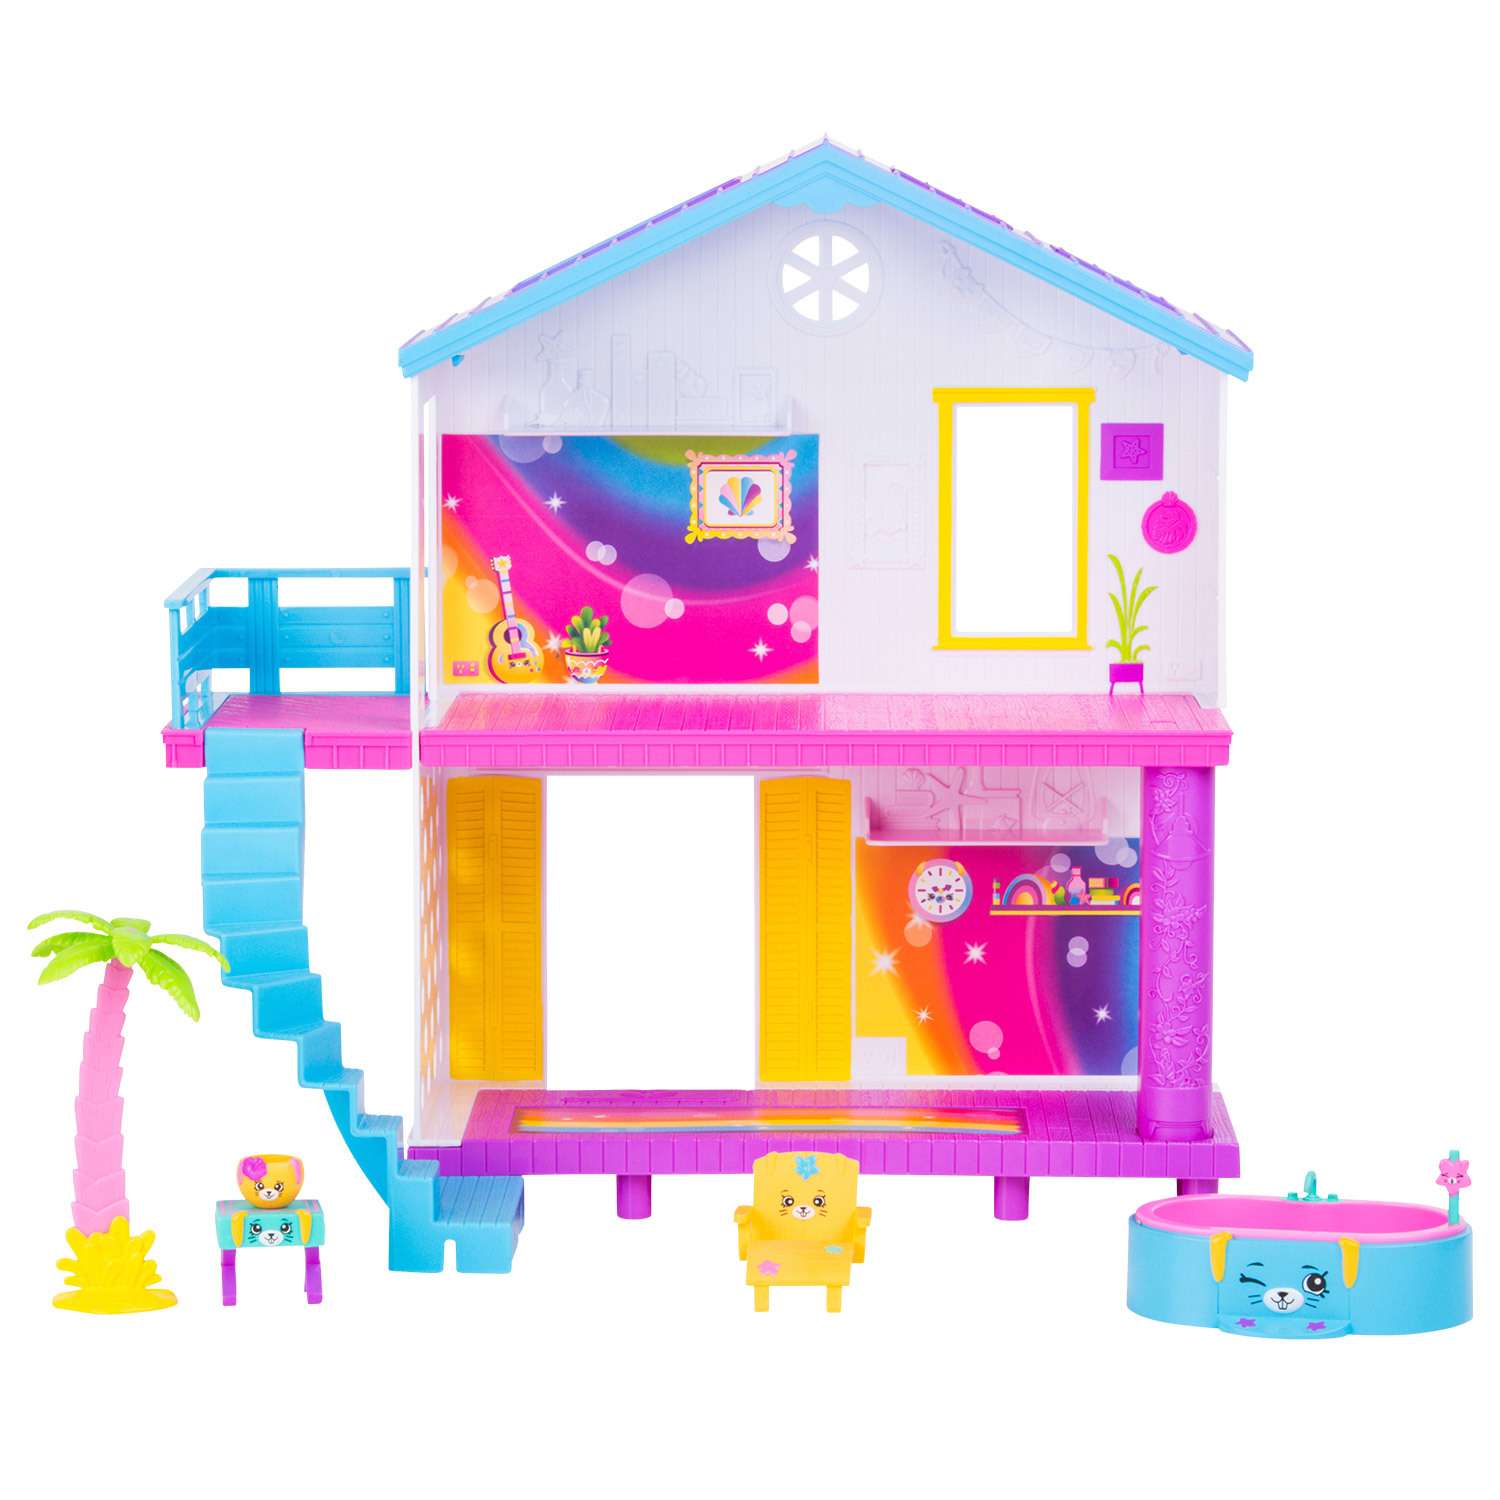 Игрушка Happy Places Shopkins Пляжный домик в непрозрачной упаковке (Сюрприз) 56860 - фото 5